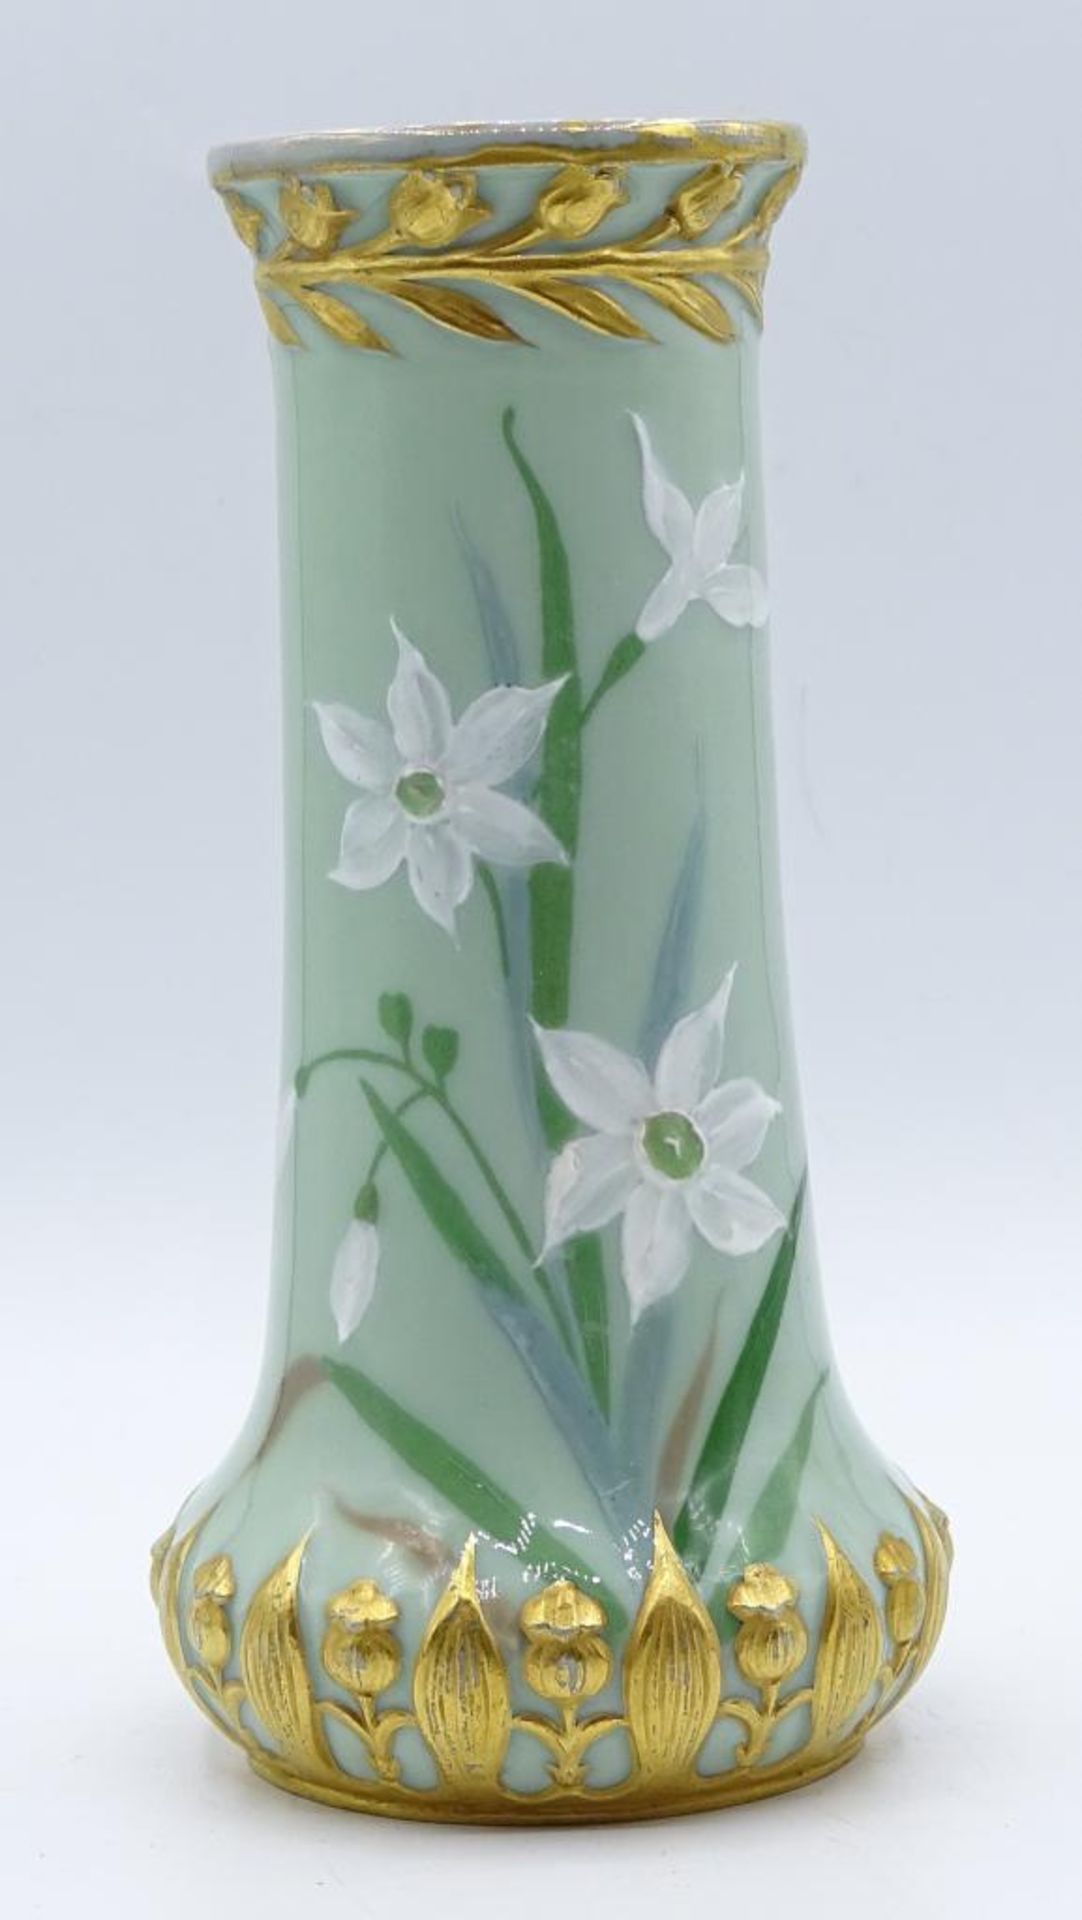 Jugendstil Vase "Pâte-sur-pâte",Florales Dekor,Goldbemalung,berieben,H-17,5